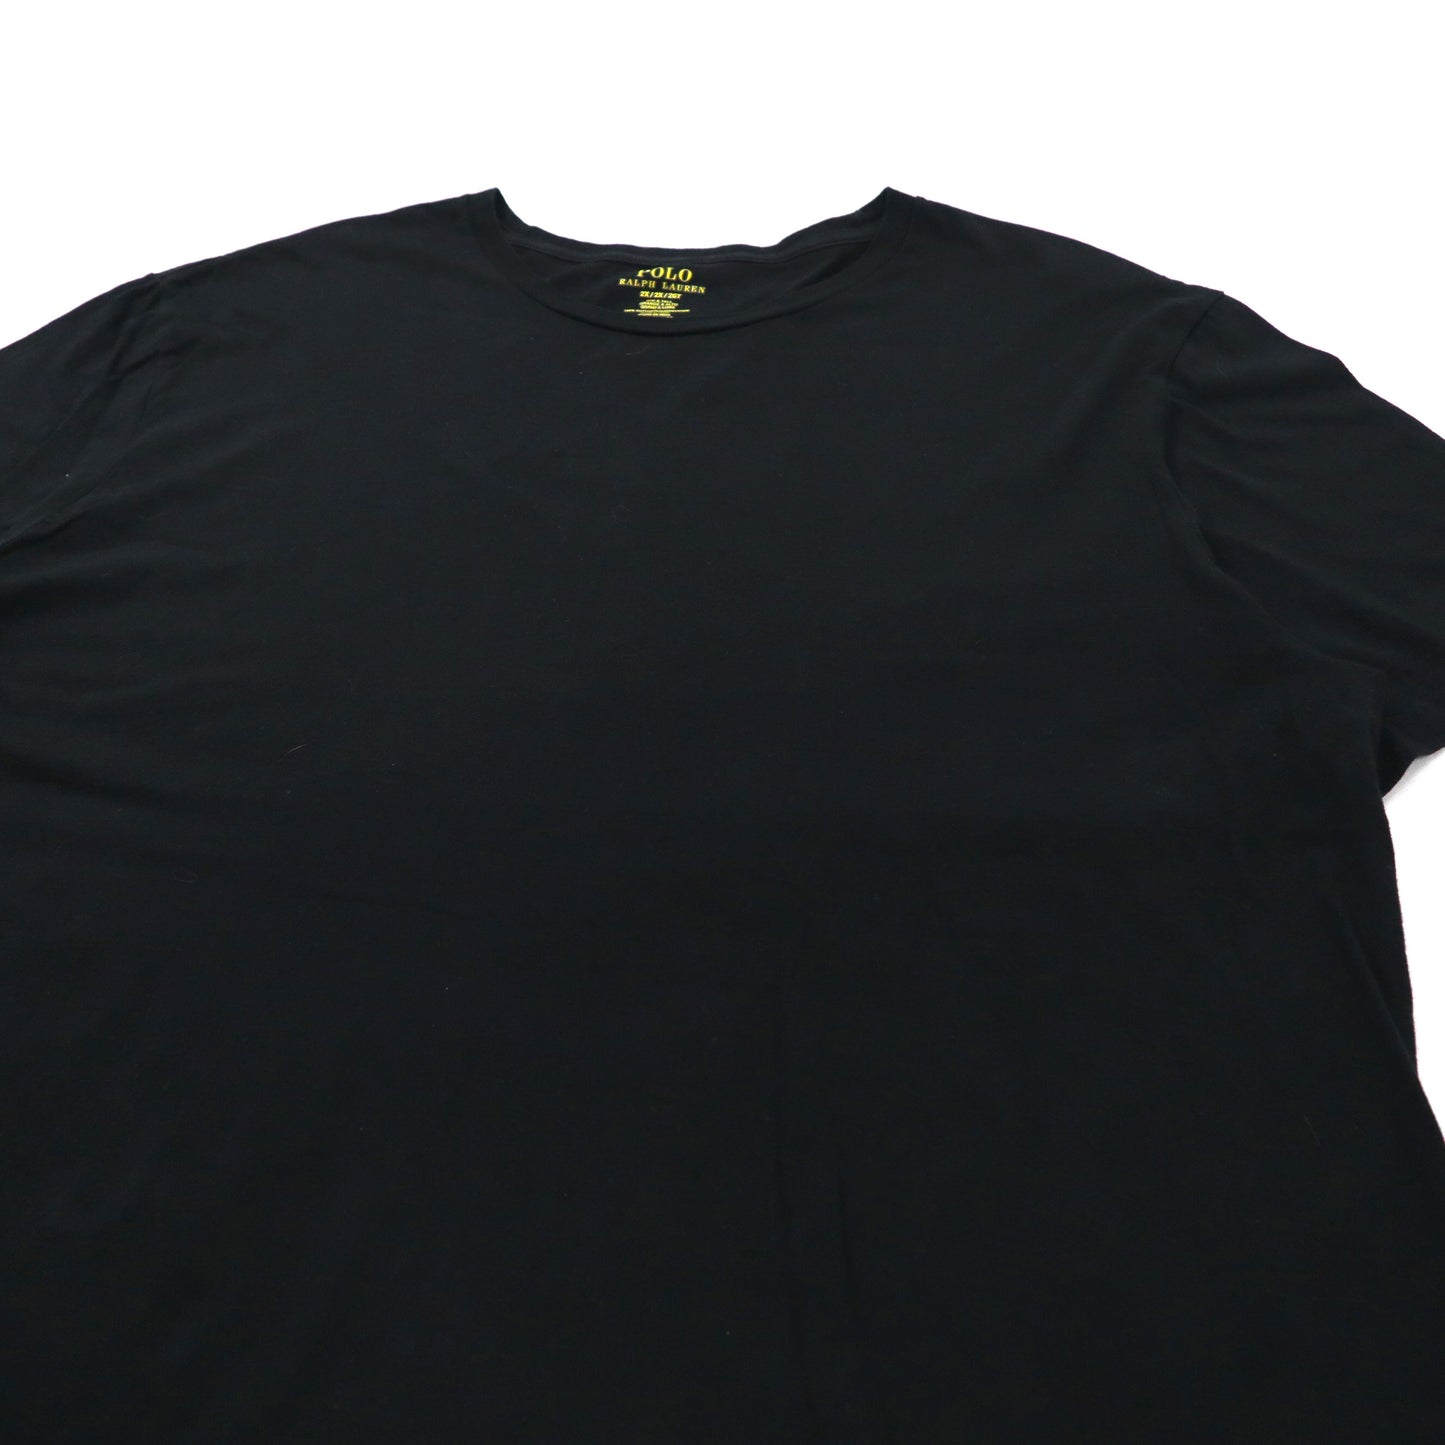 POLO RALPH LAUREN ビッグサイズTシャツ 2X ブラック コットン スモールポニー刺繍